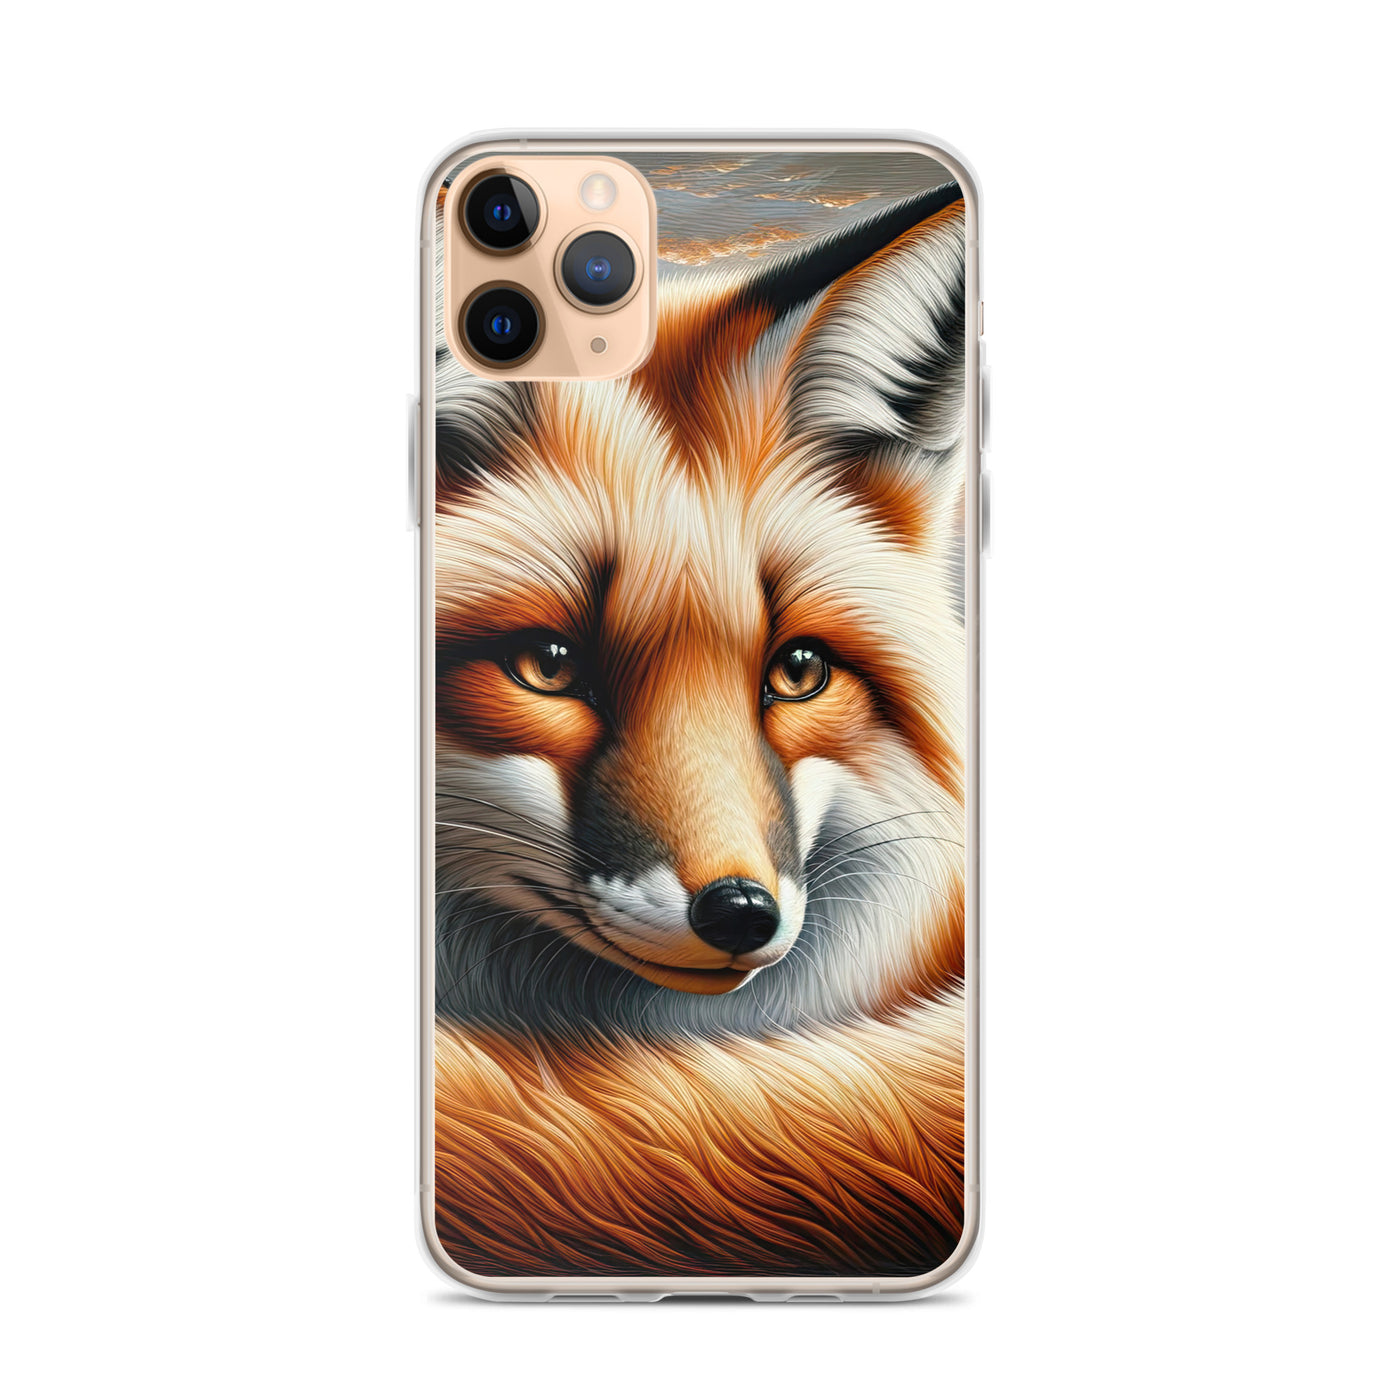 Ölgemälde eines nachdenklichen Fuchses mit weisem Blick - iPhone Schutzhülle (durchsichtig) camping xxx yyy zzz iPhone 11 Pro Max